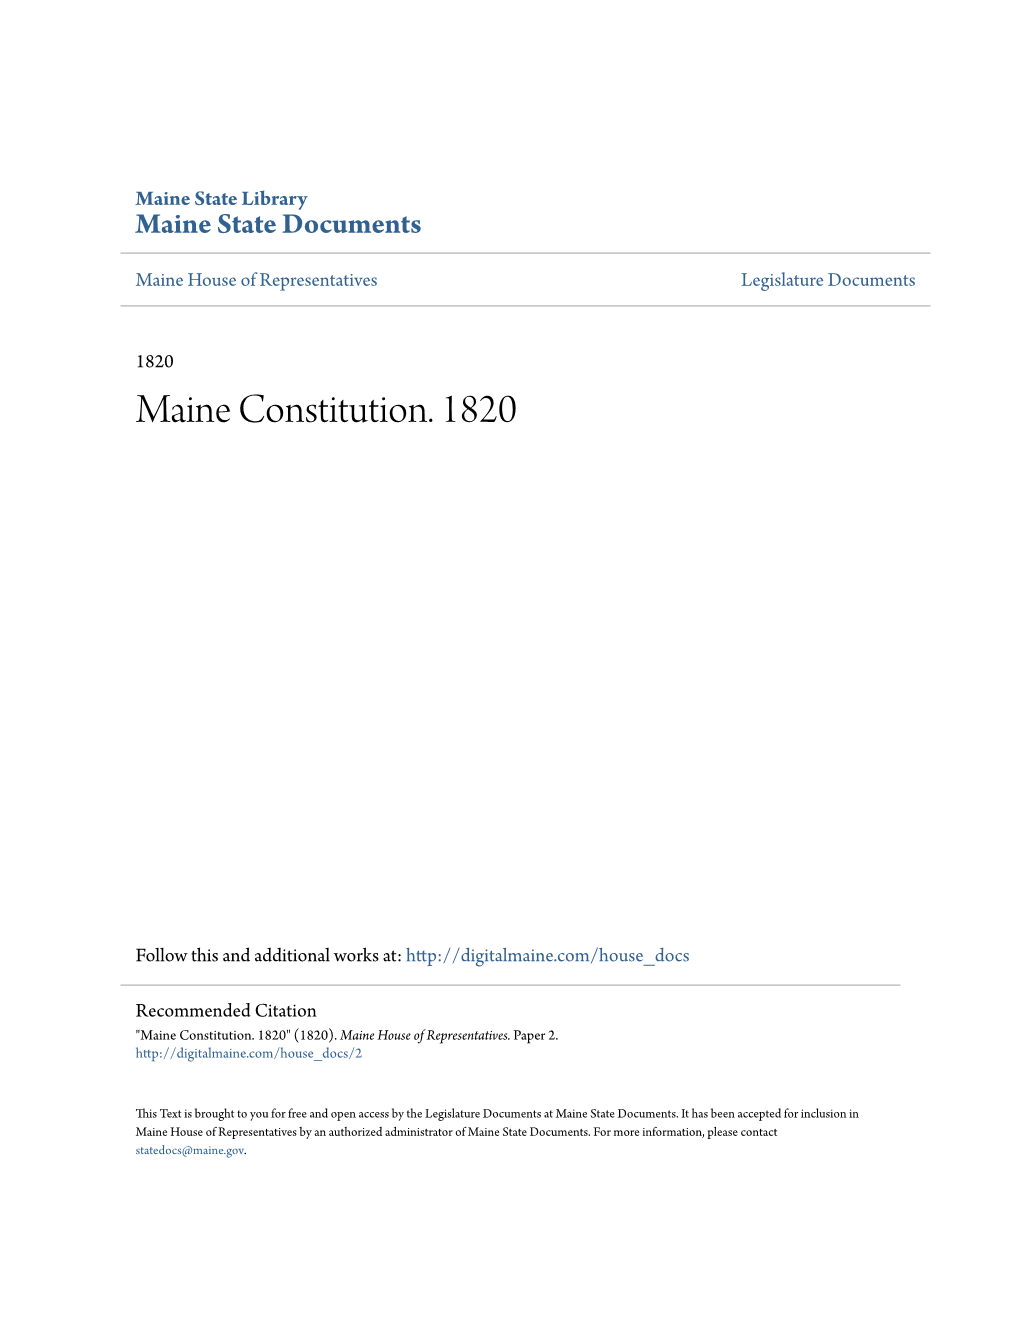 Maine Constitution. 1820